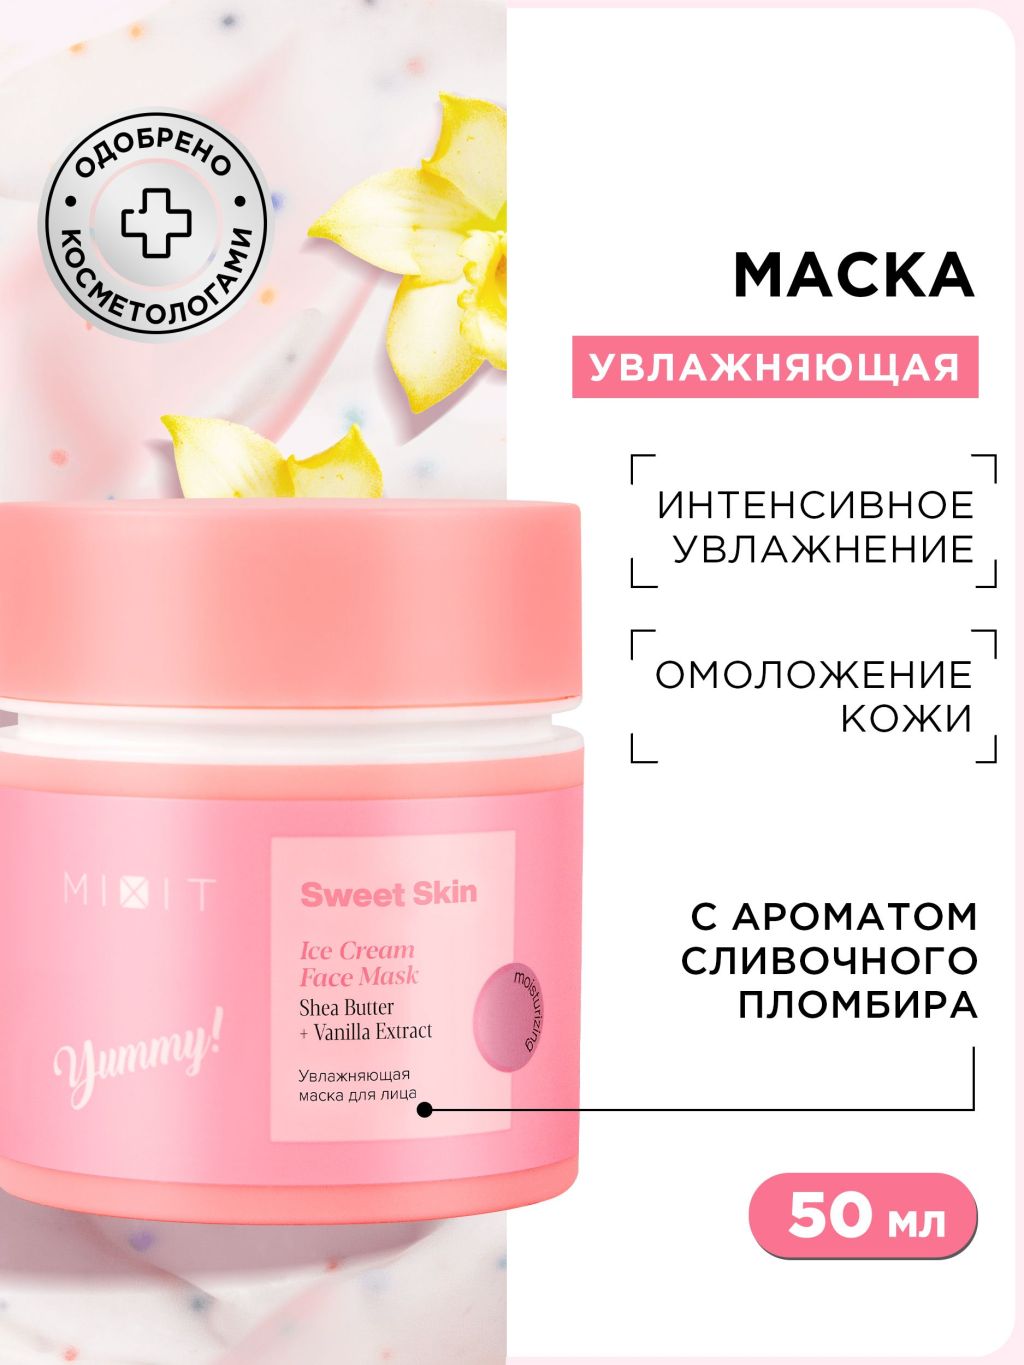 Маска для лица MIXIT Sweet Skin Ice Cream Mask с маслом ши и экстрактом ванили, 50 мл